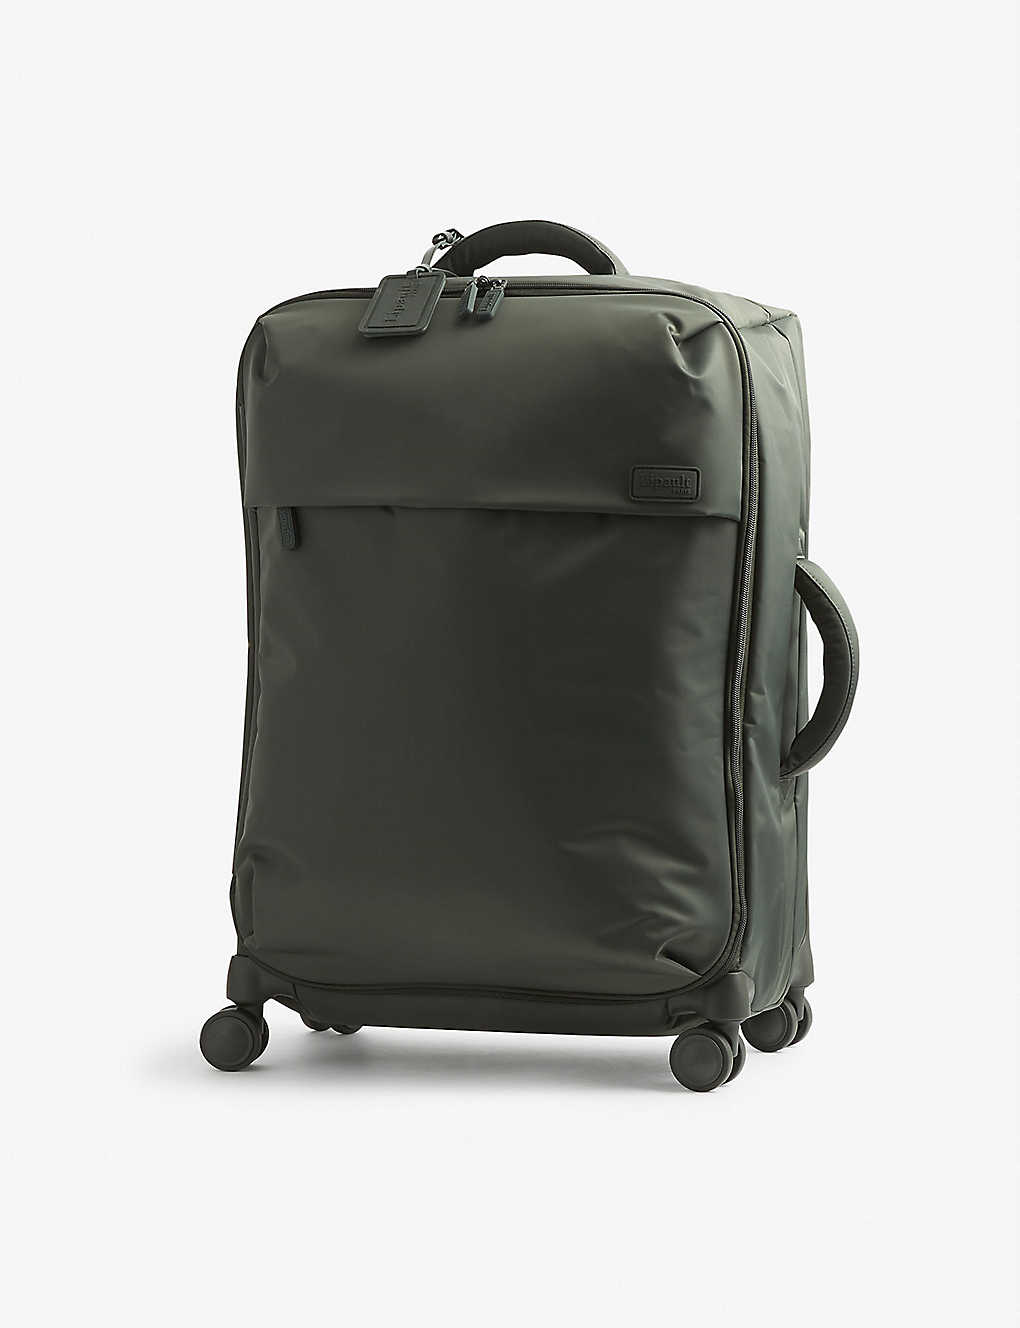 Lipault Plume Medium-trip Nylon Suitcase 63cm In Khaki